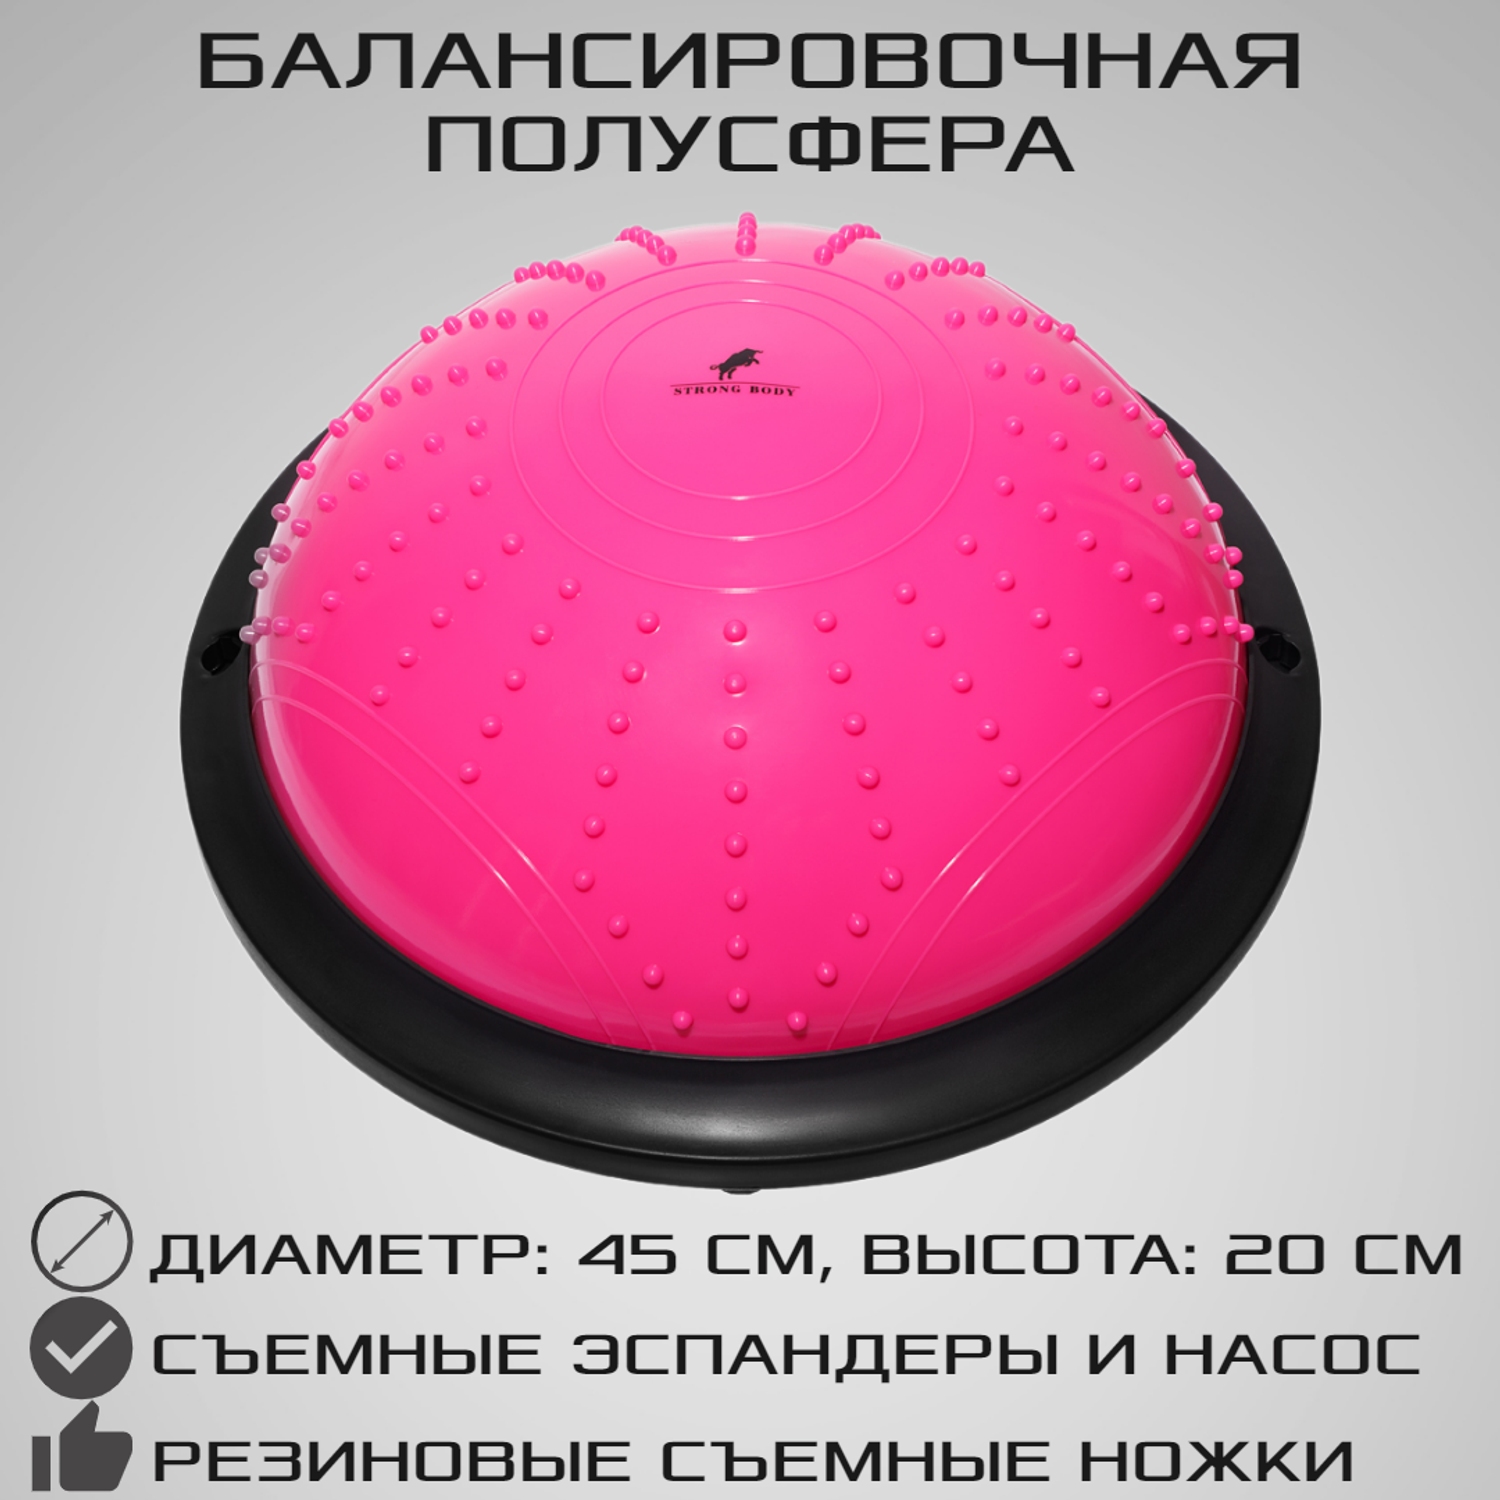 Балансировочная полусфера BOSU STRONG BODY в комплекте со съемными эспандерами розовая - фото 1